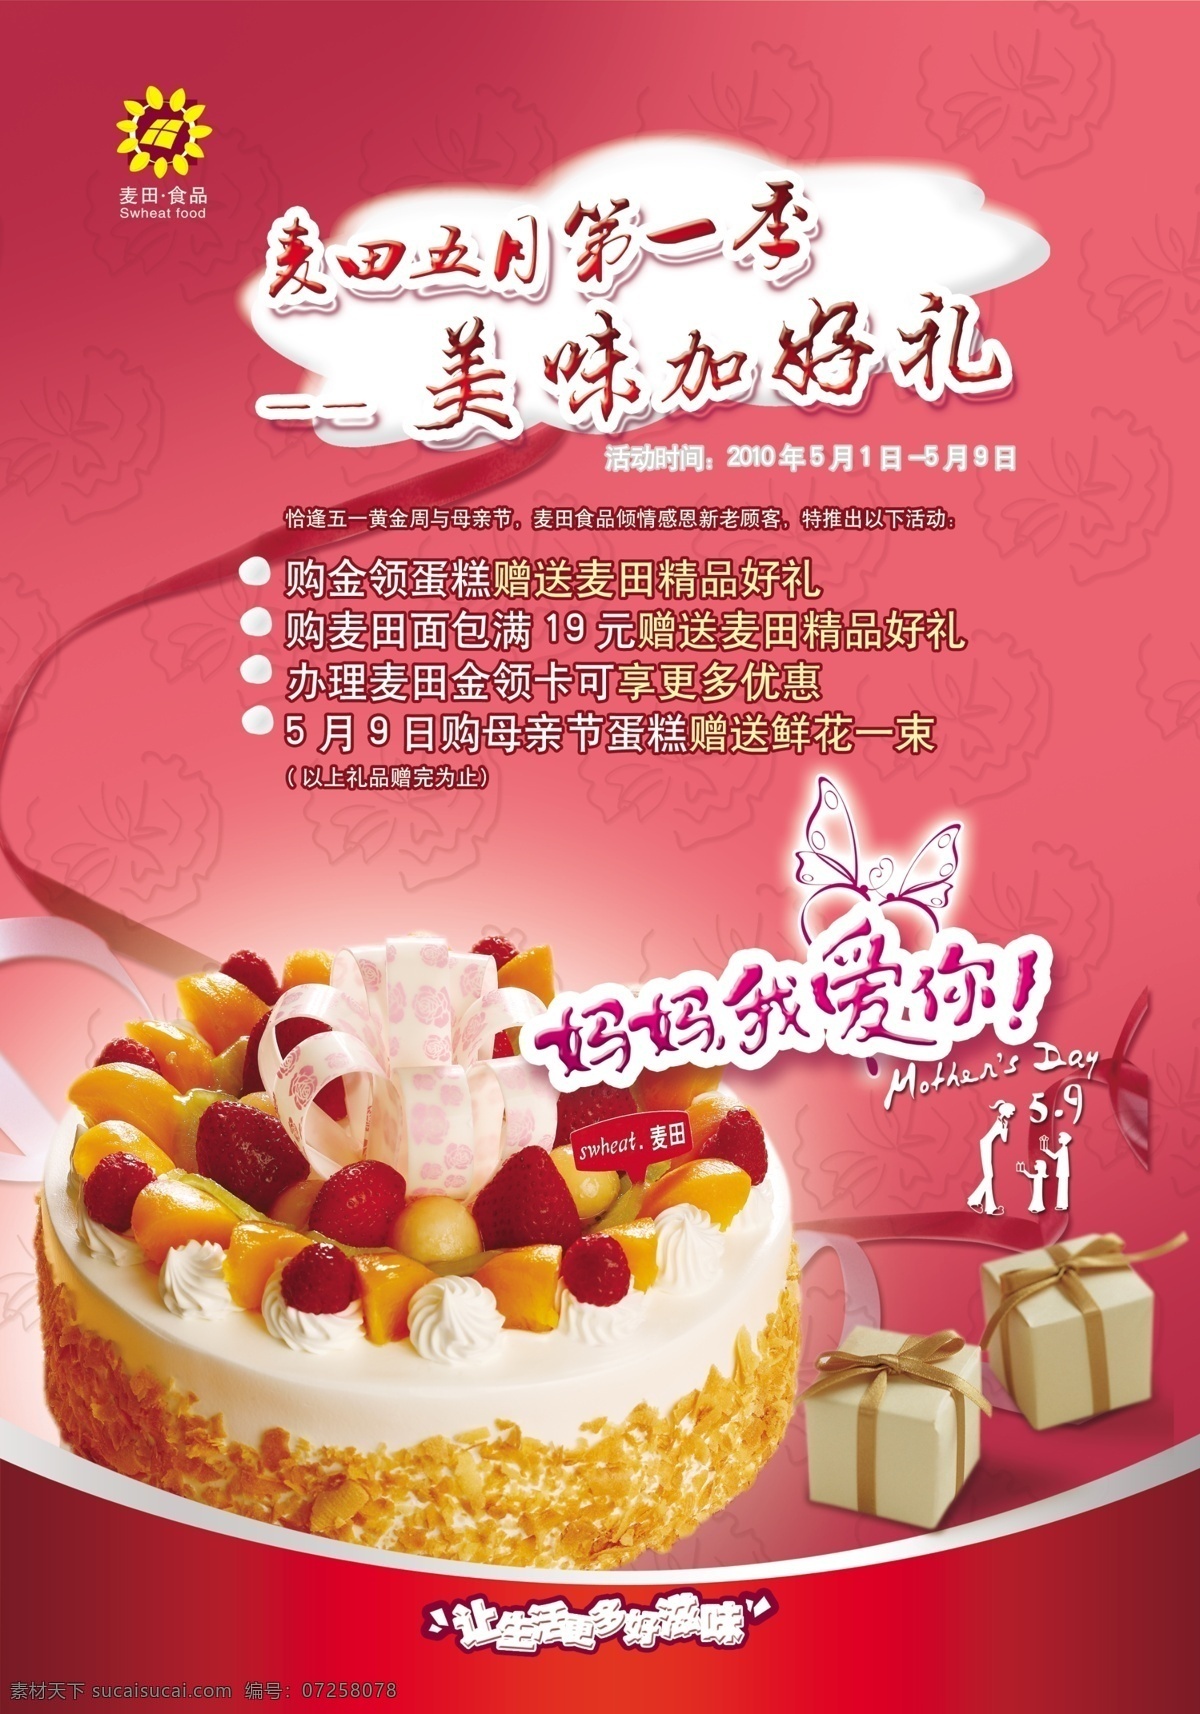 欢乐 五 宣传单 模板下载 美味好礼 蛋糕 礼盒 美食 dm单 dm宣传单 广告设计模板 源文件 粉色